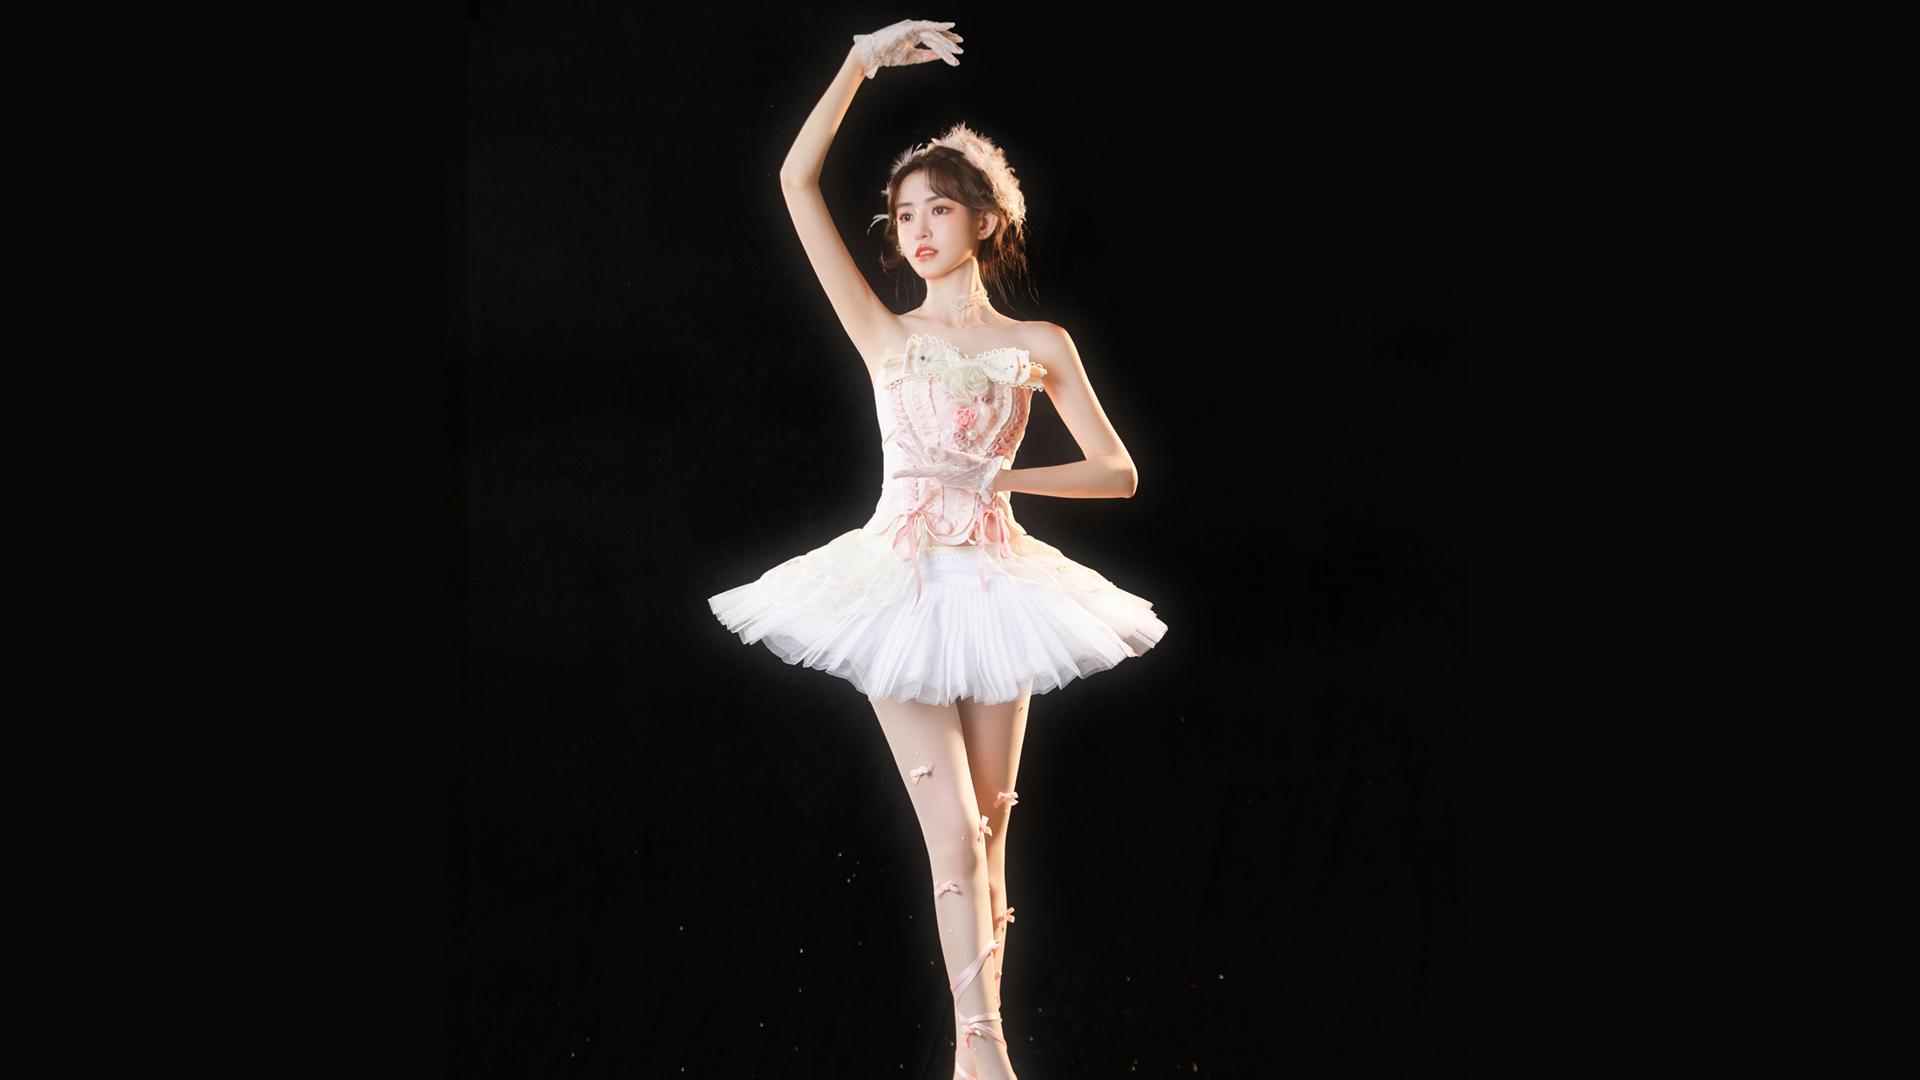 跳芭蕾的女孩芭蕾手机壁纸高清壁纸-壁纸图片大全